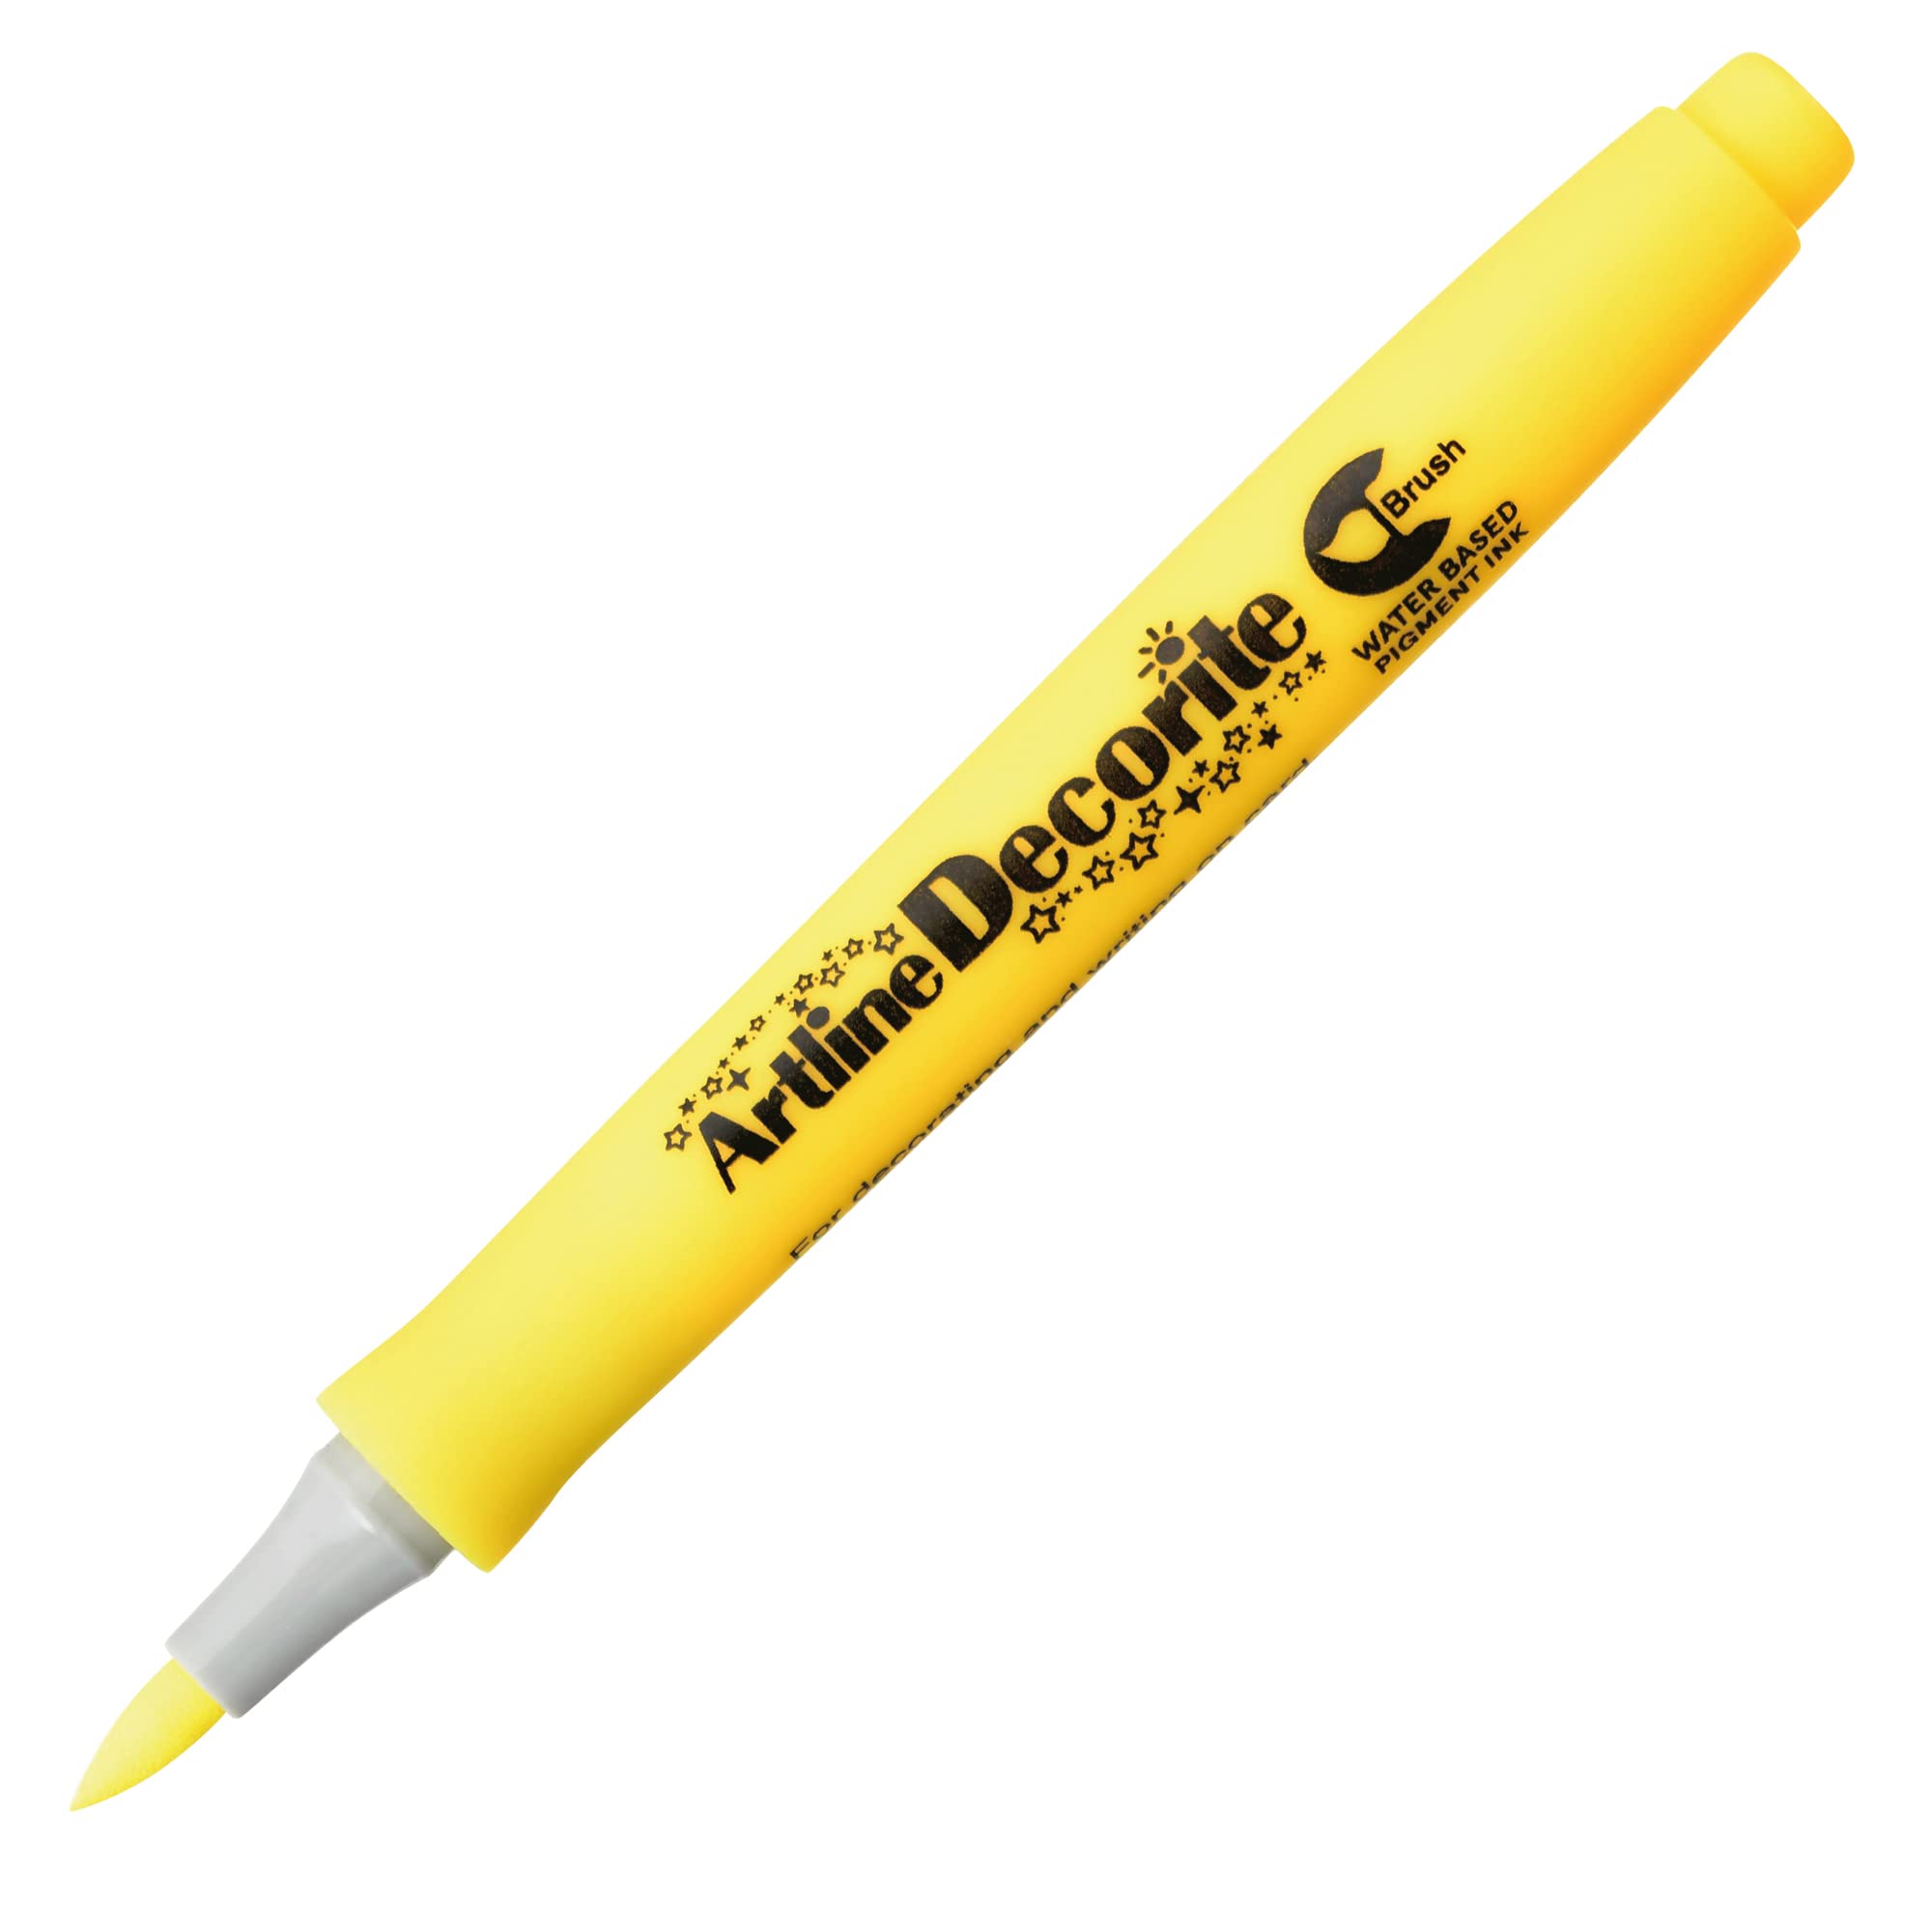 Marker decorite punta pennello giallo